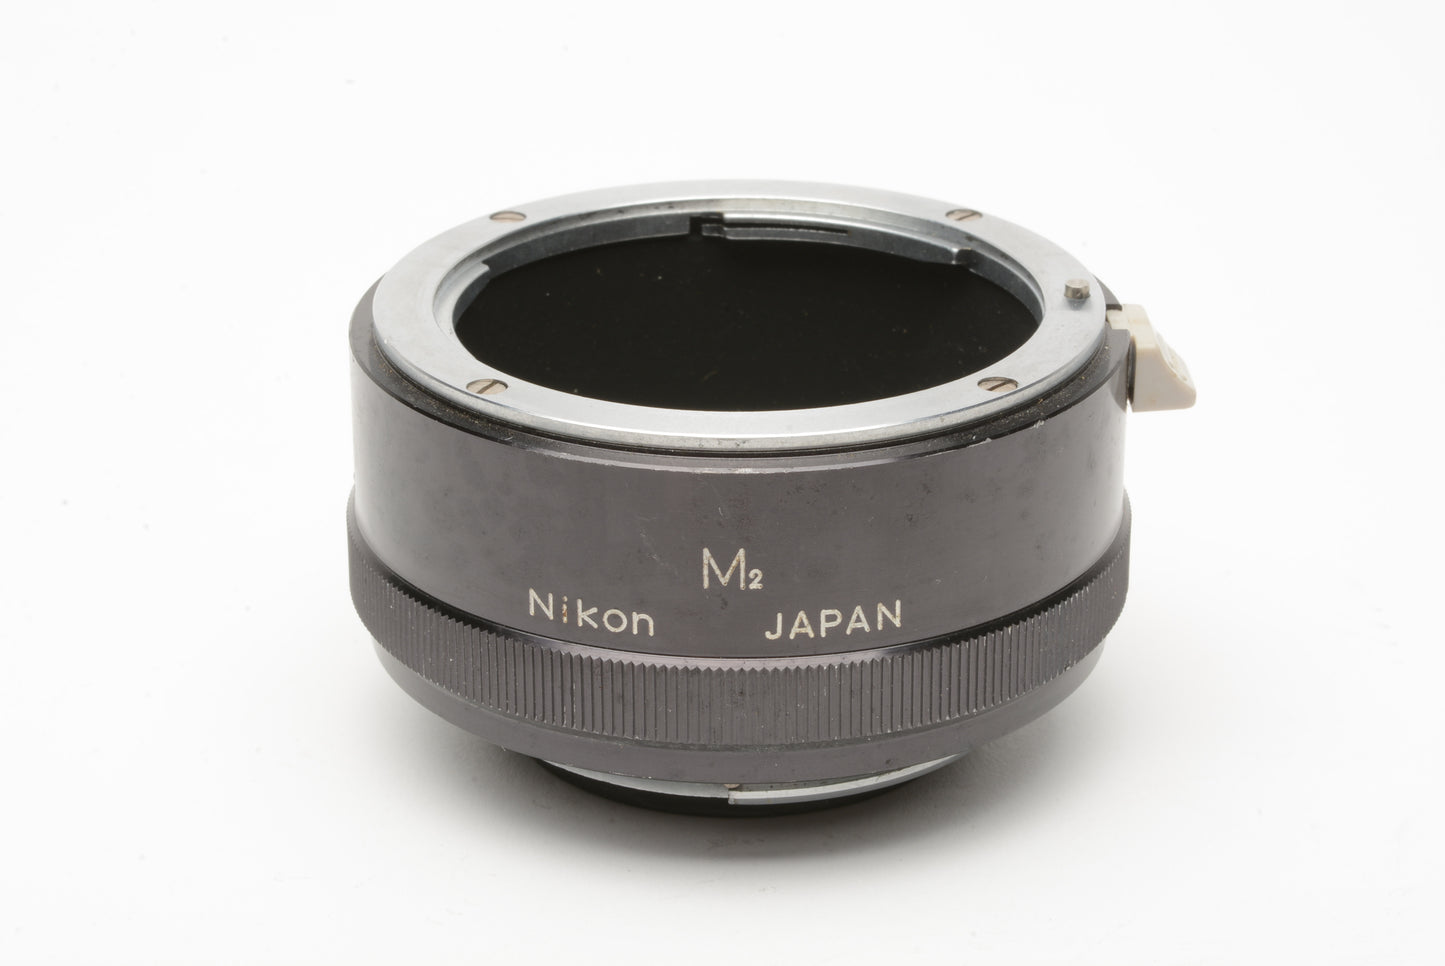 Nikon M2 extension tube